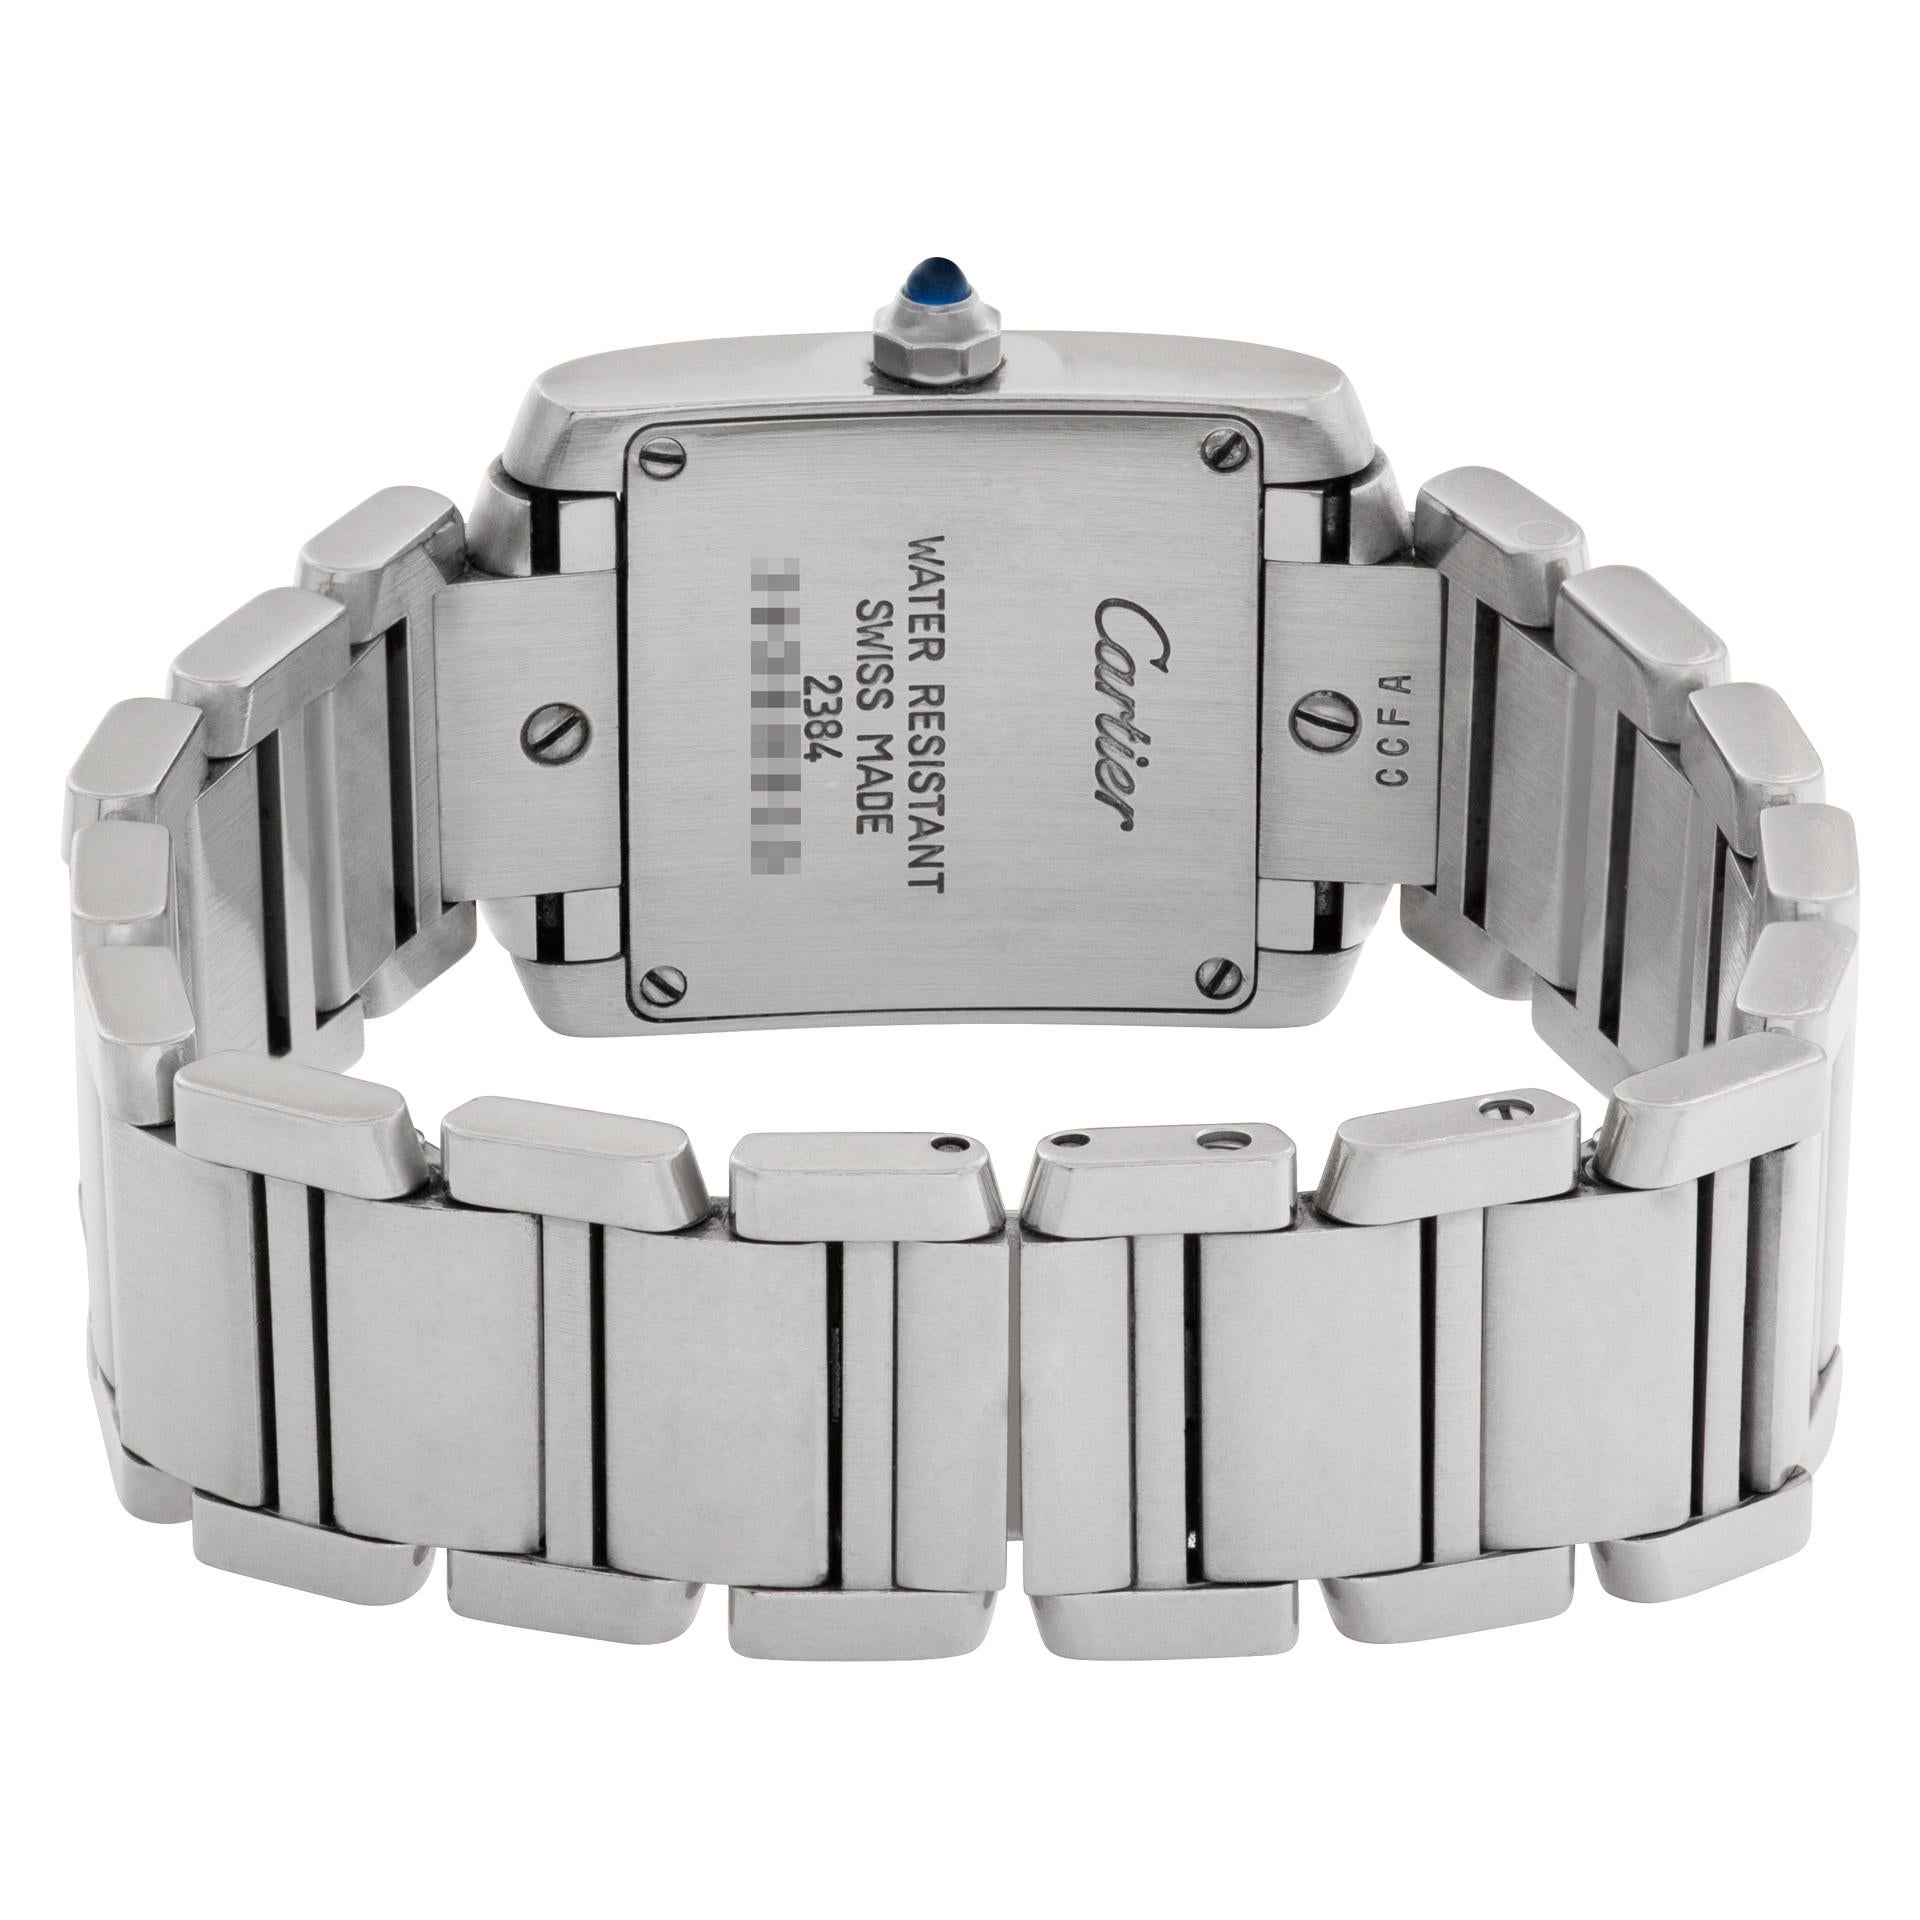 louis philippe quartz watch price